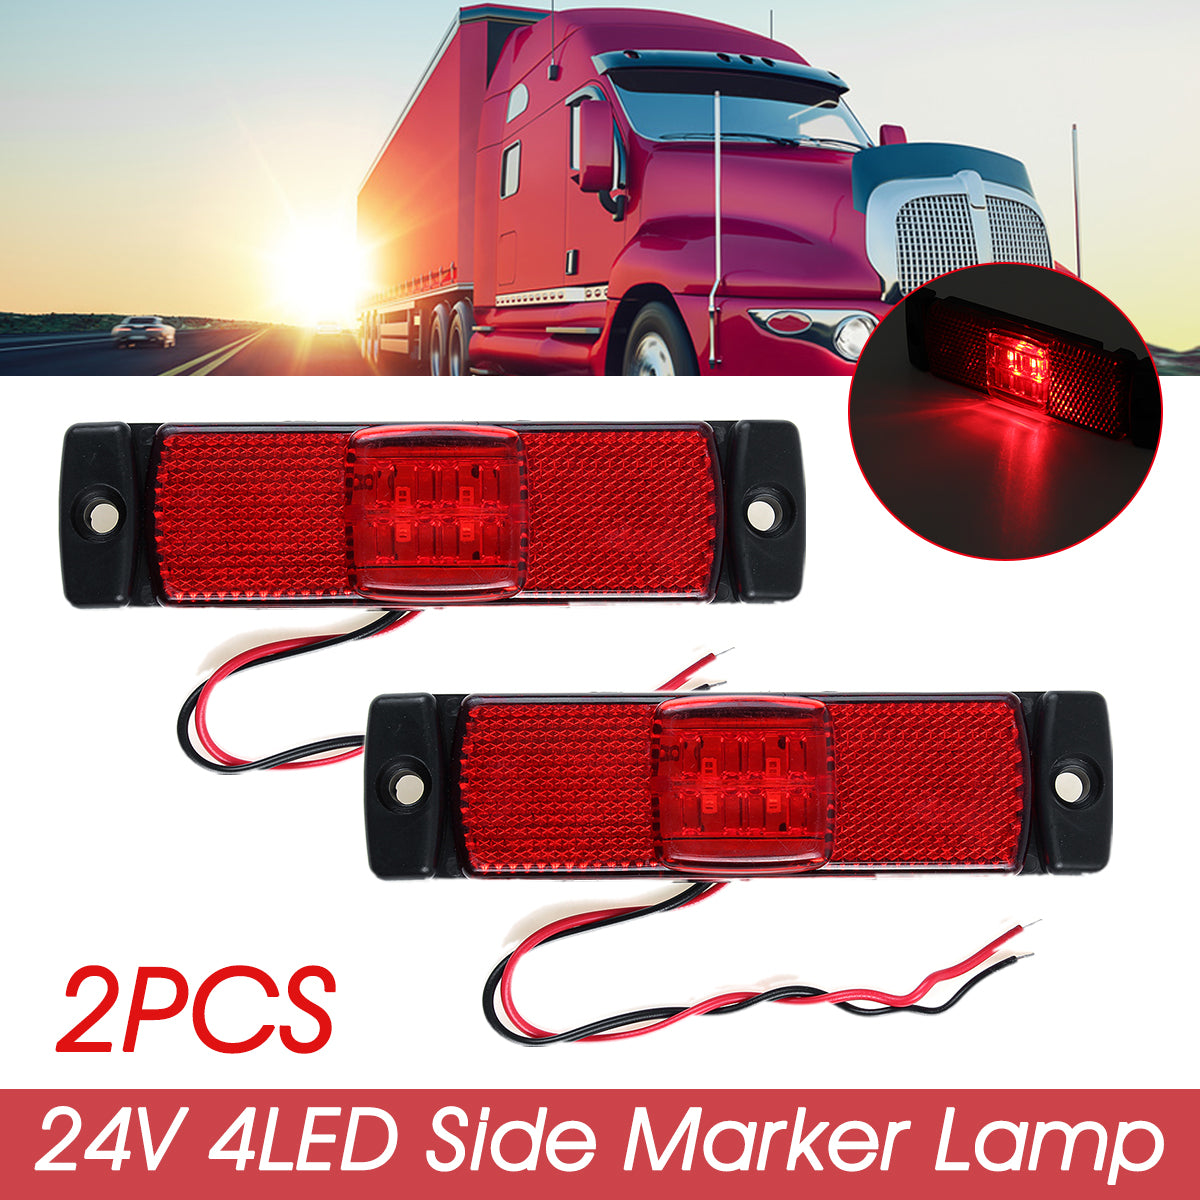 Firebrick 2PCS 24V 4 LED Front Side Marker Lights Position Lamp For Car Truck Trailer Lorry